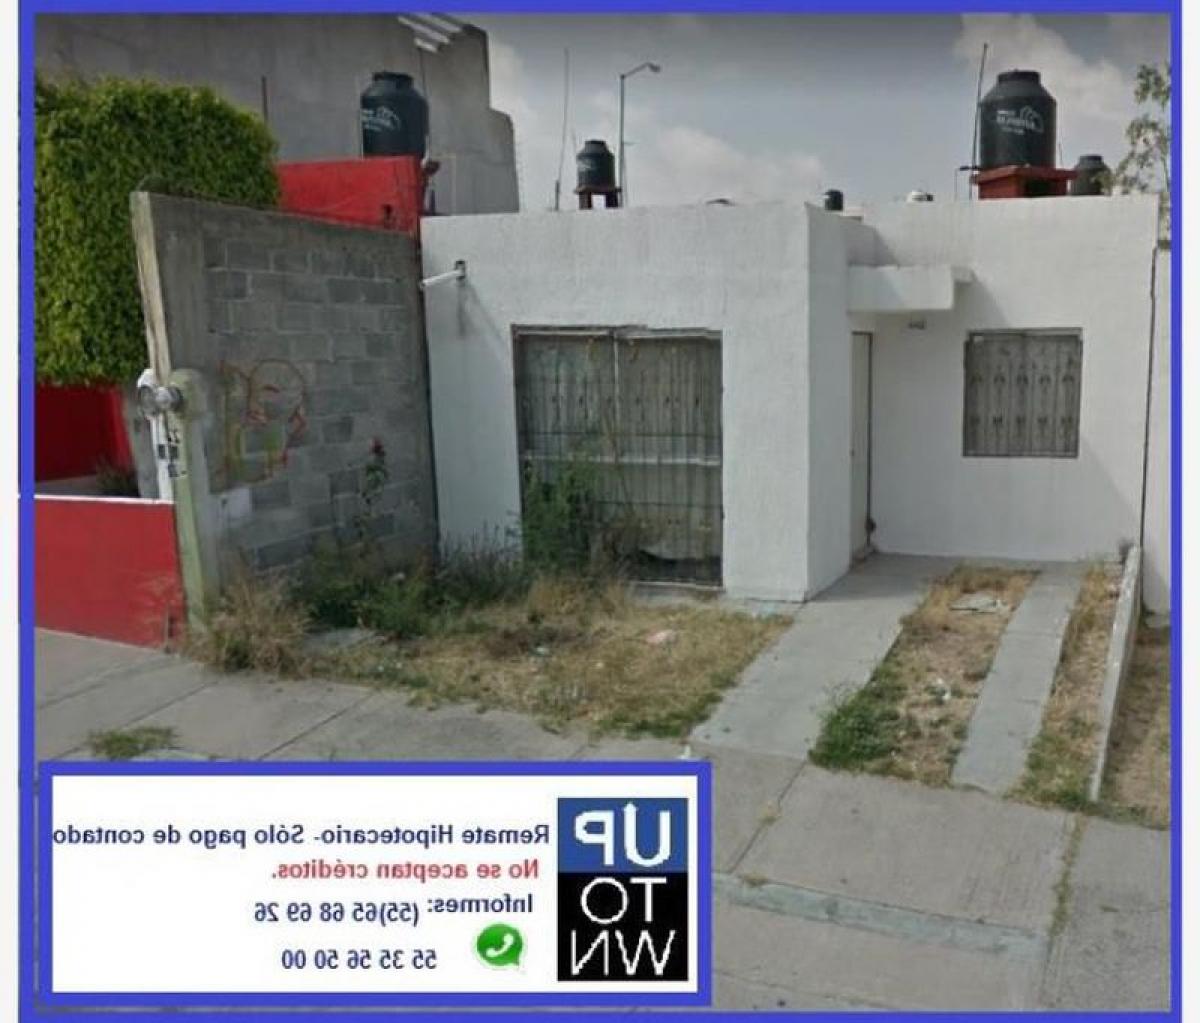 Picture of Home For Sale in Leon, Guanajuato, Mexico